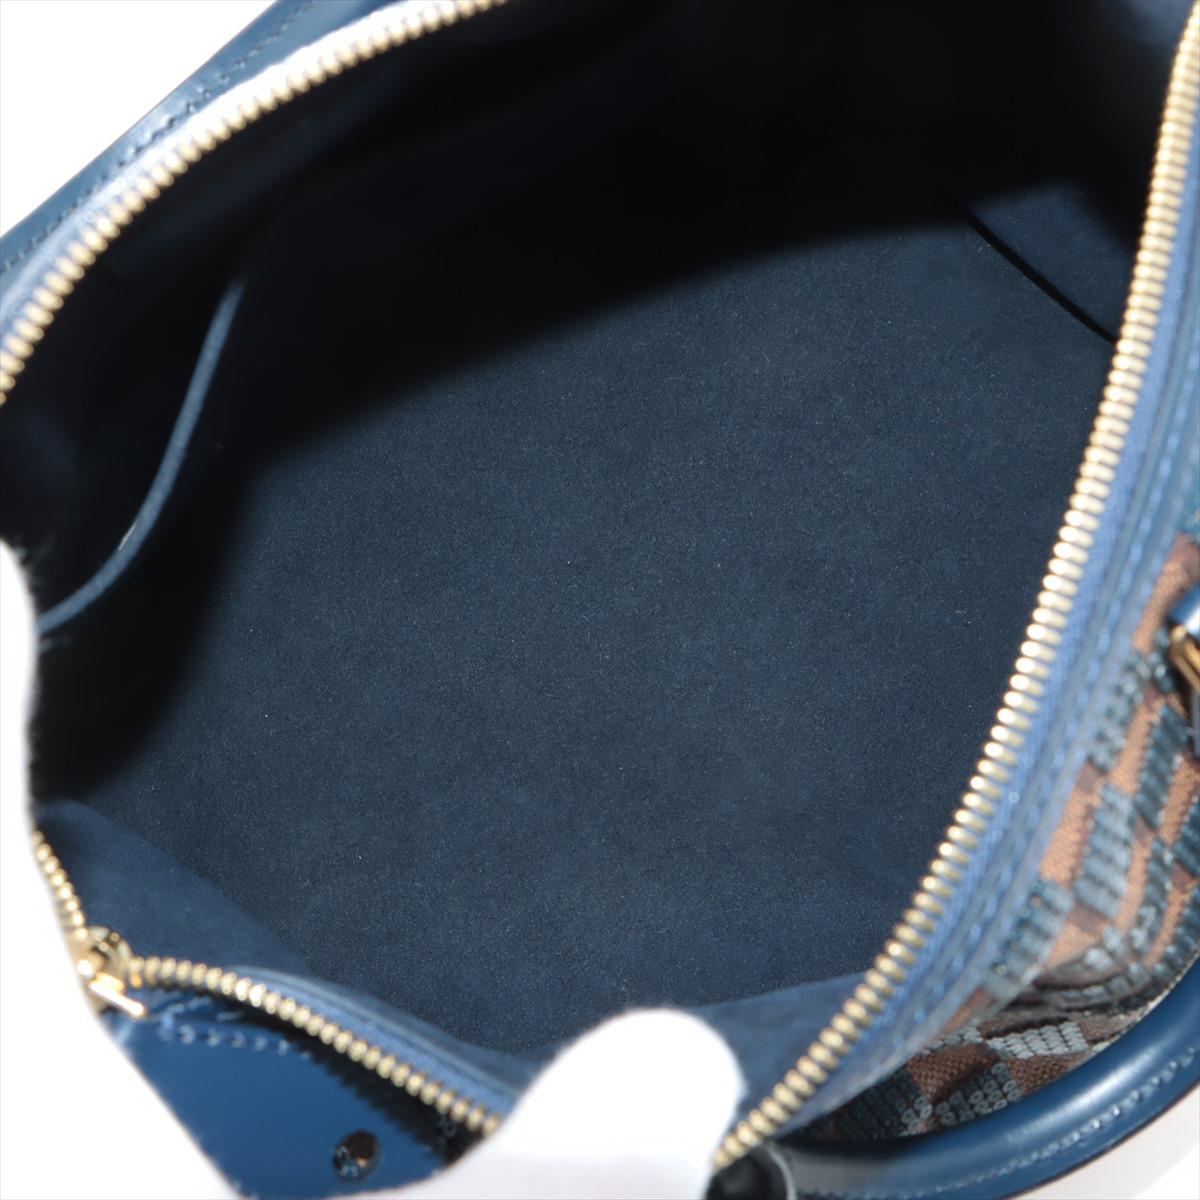 Erweitern Sie Ihre Garderobe mit der LOUIS VUITTON Damier Paillettes Speedy 30. Diese kultige Speedy-Tasche ist mit atemberaubenden marineblauen Pailletten auf dem zeitlosen Damier-Canvas der Marke verziert - die 30 steht für die Breite der Tasche